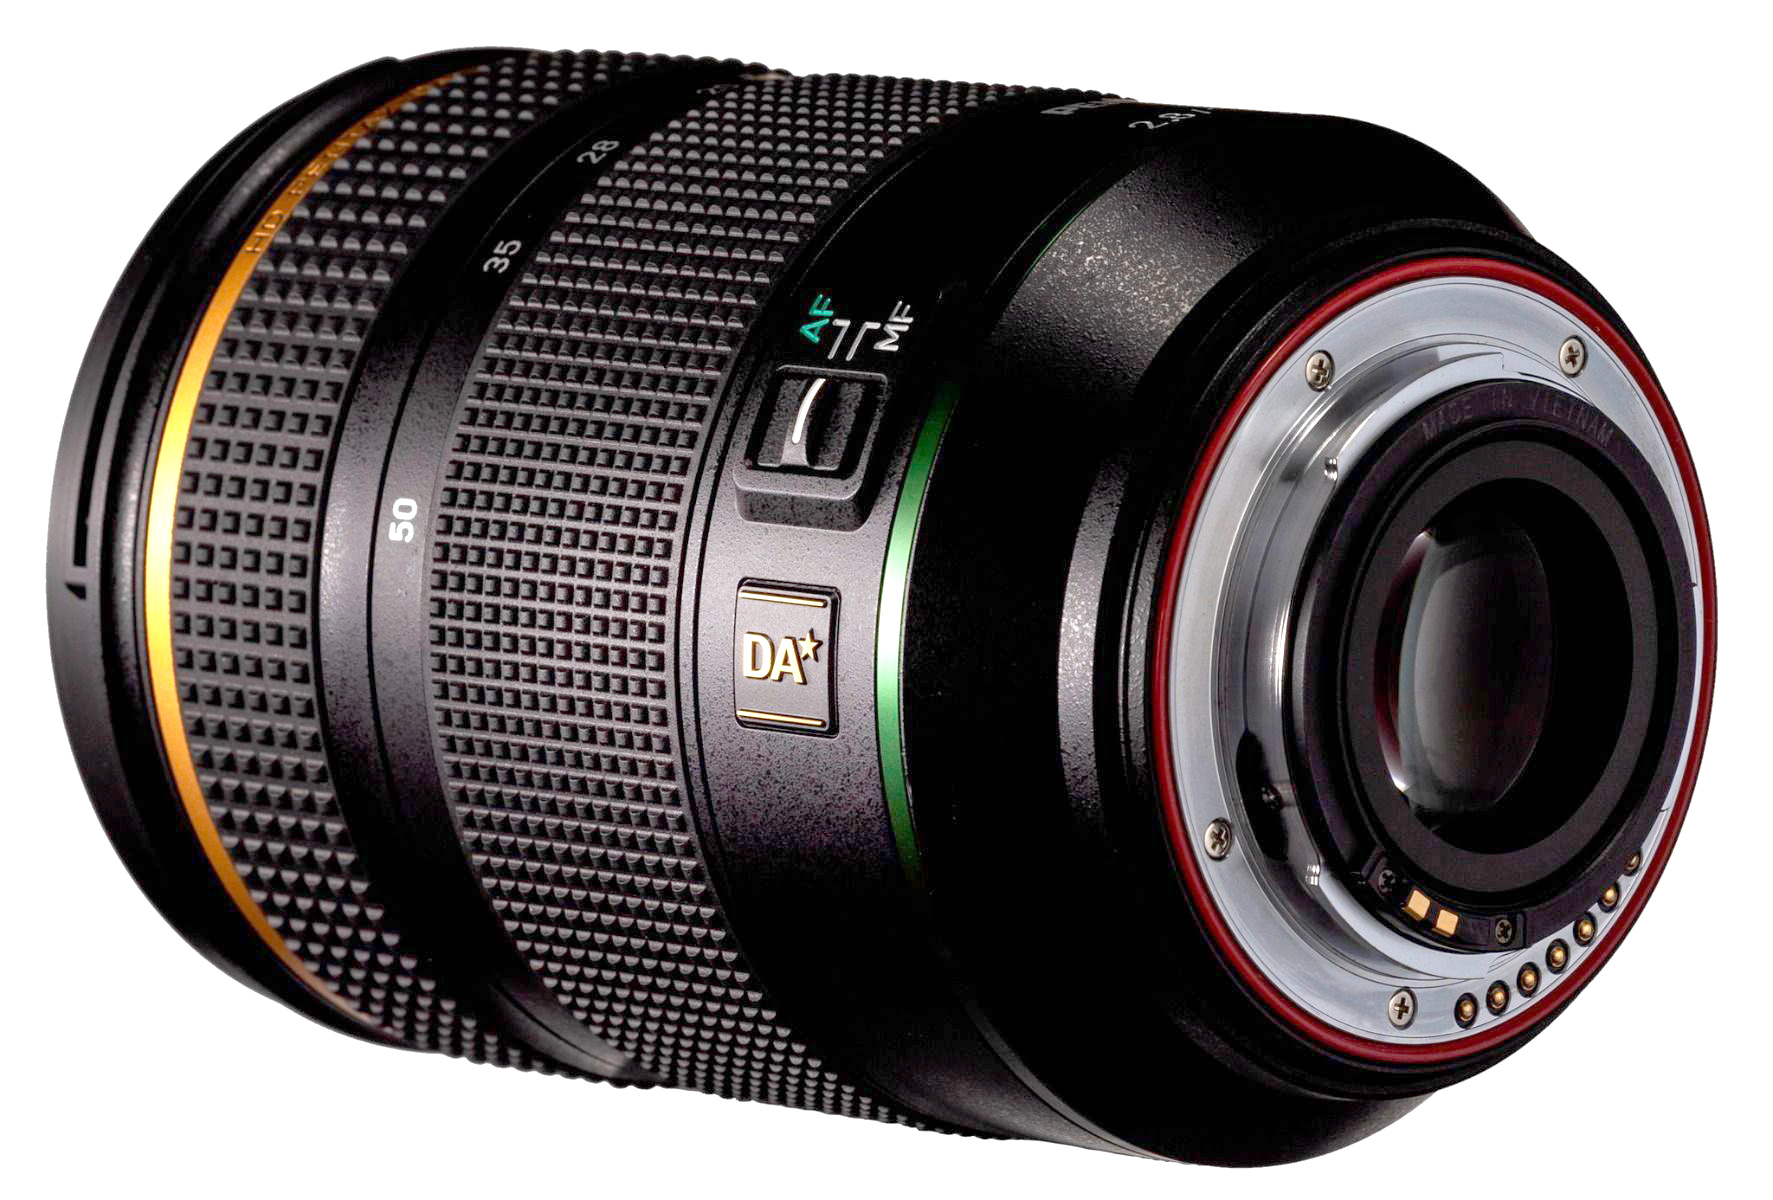 HD Pentax-DA* 16-50mm f/2.8 ED PLM AW Lens Announced